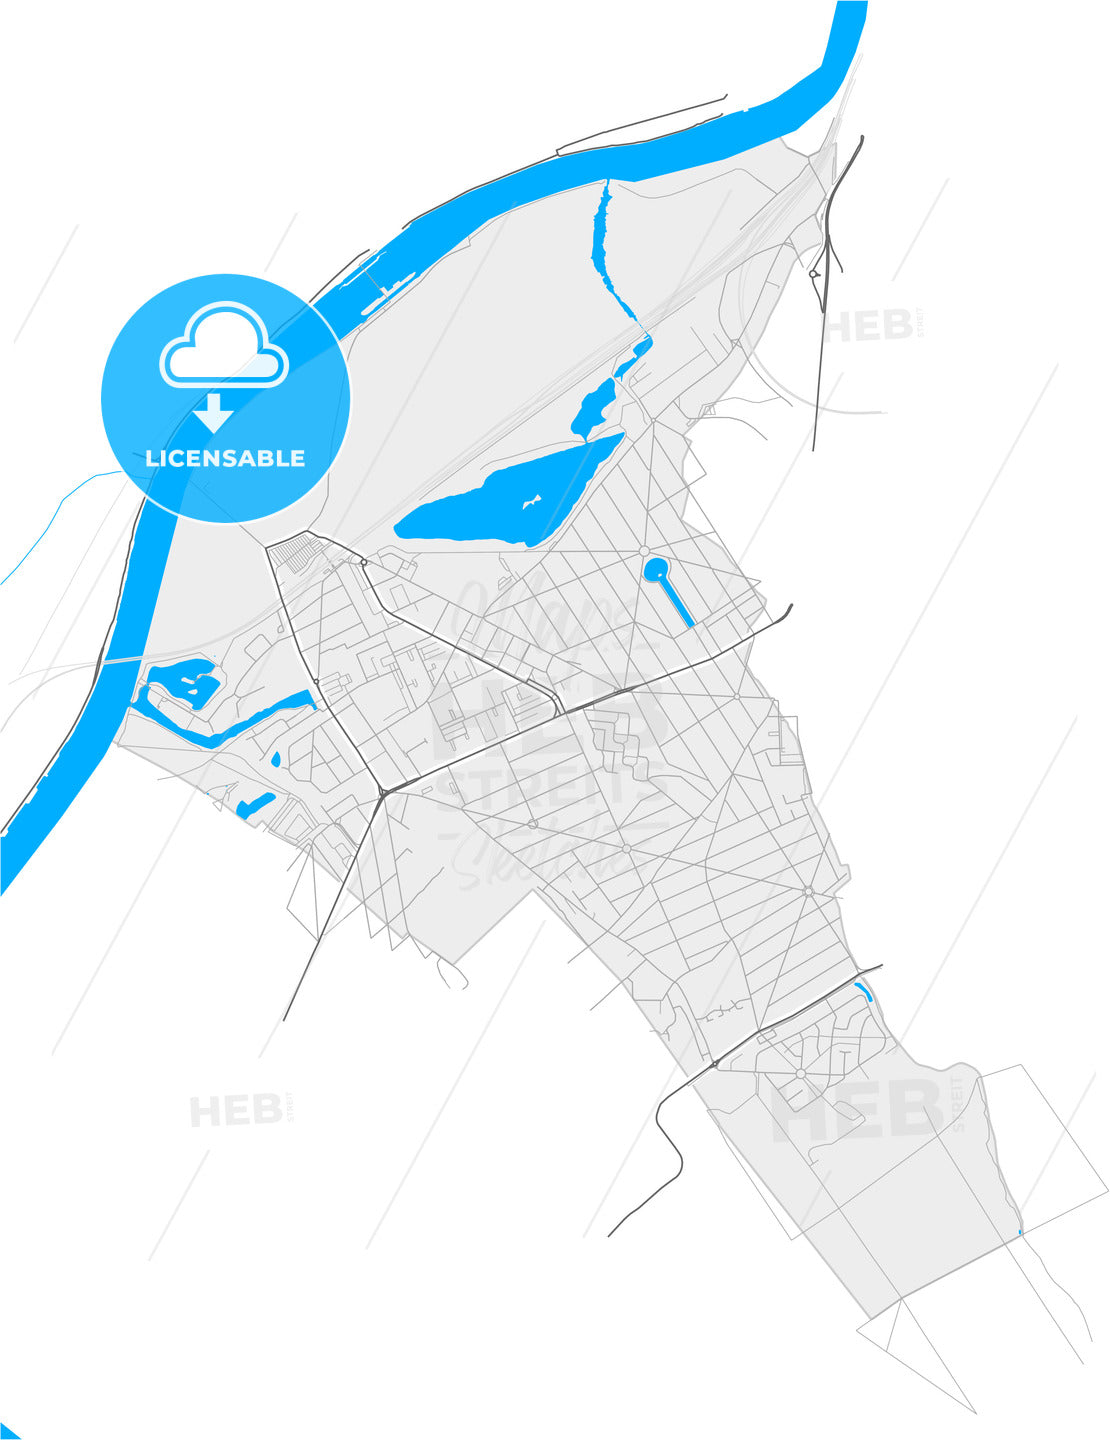 Vigneux-sur-Seine, Essonne, France, high quality vector map